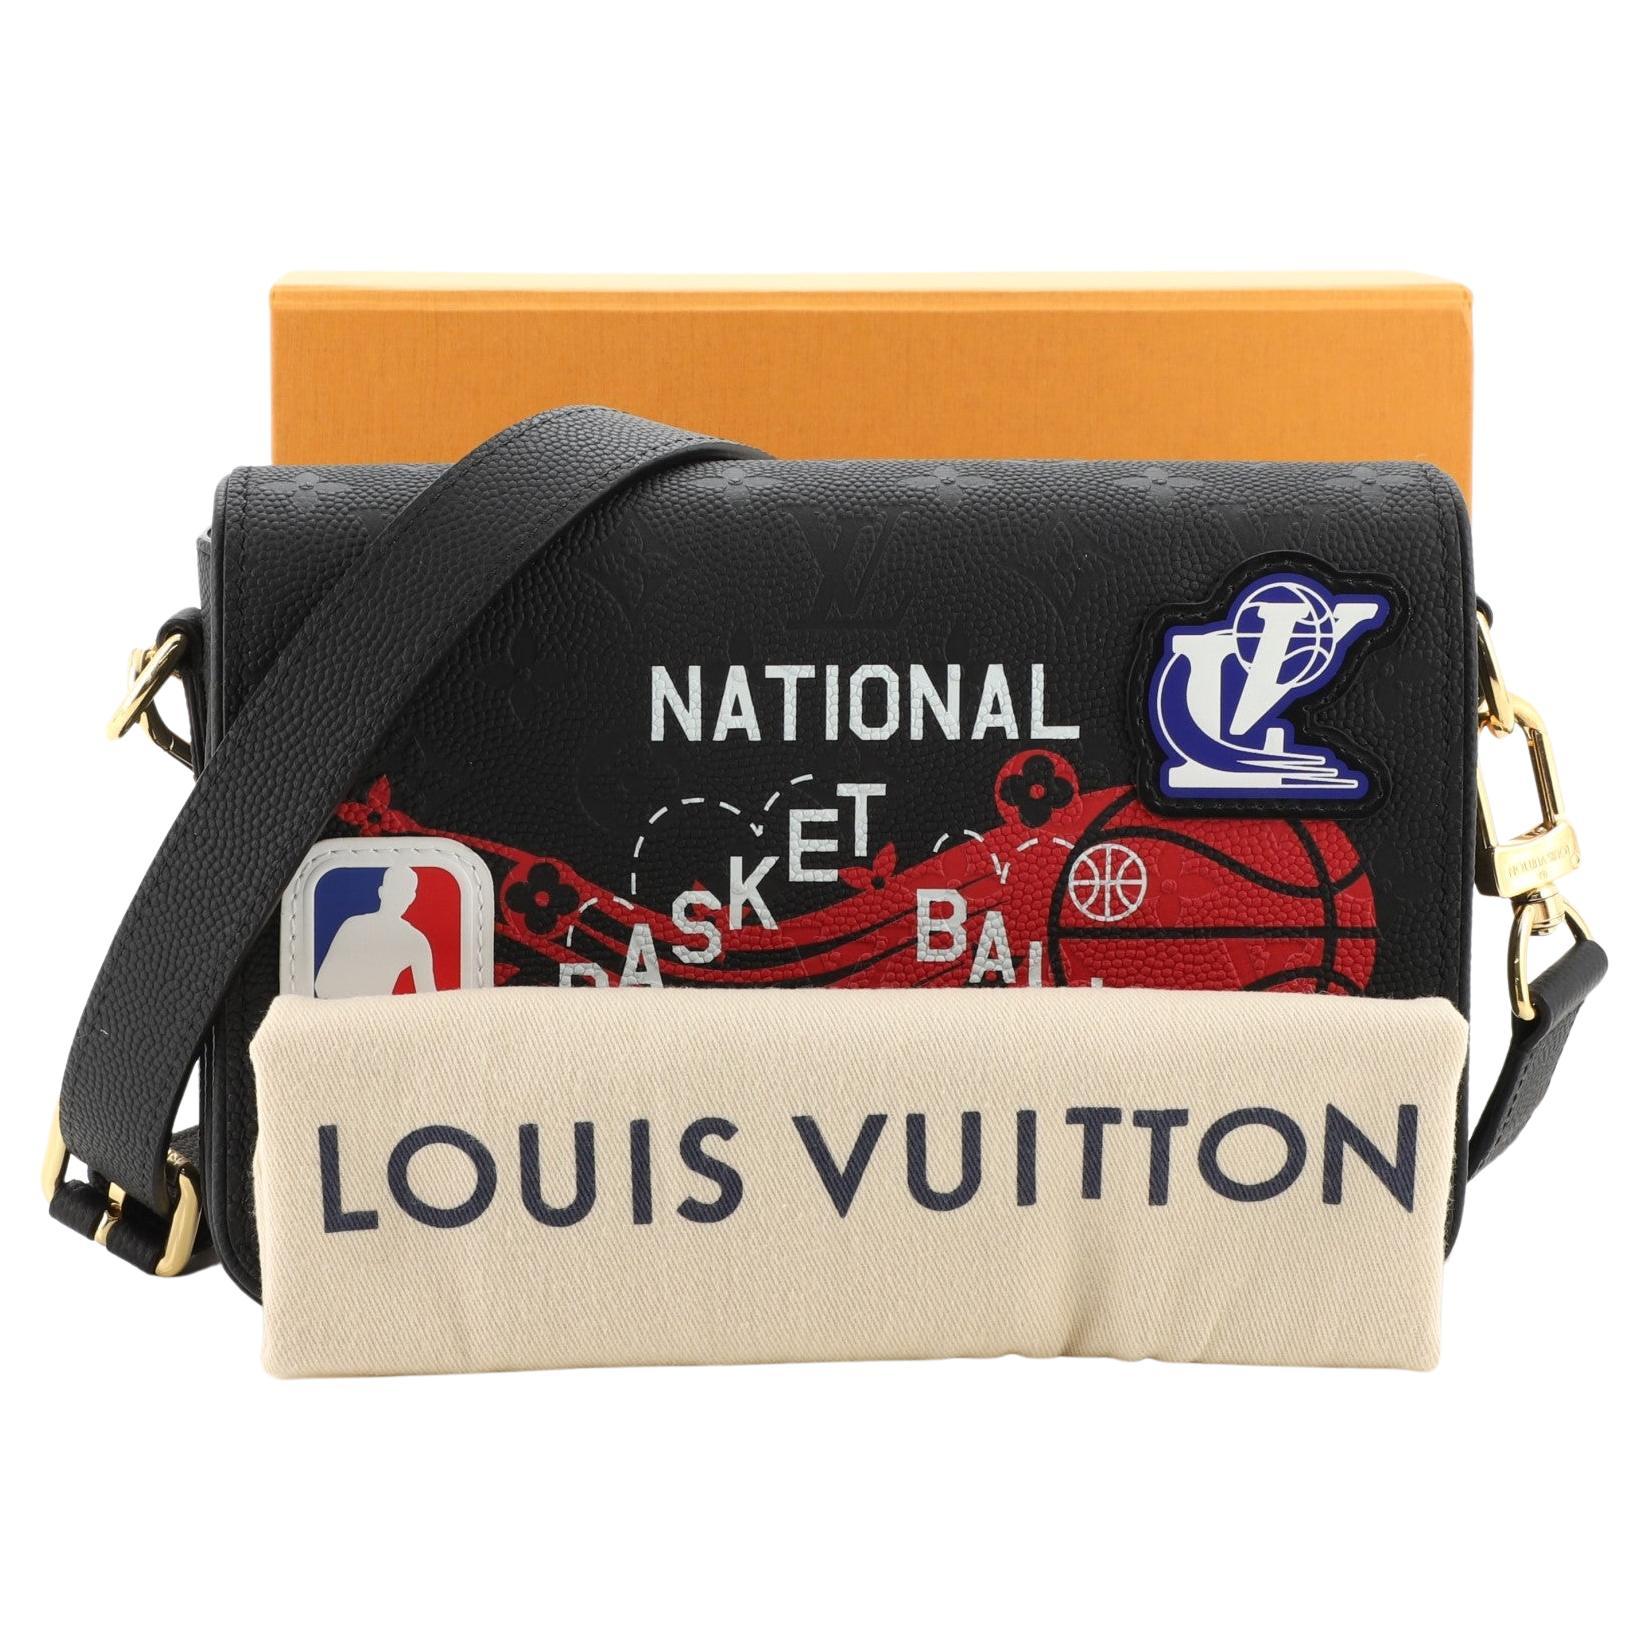 Louis Vuitton Nba Basketball - 5 For Sale on 1stDibs